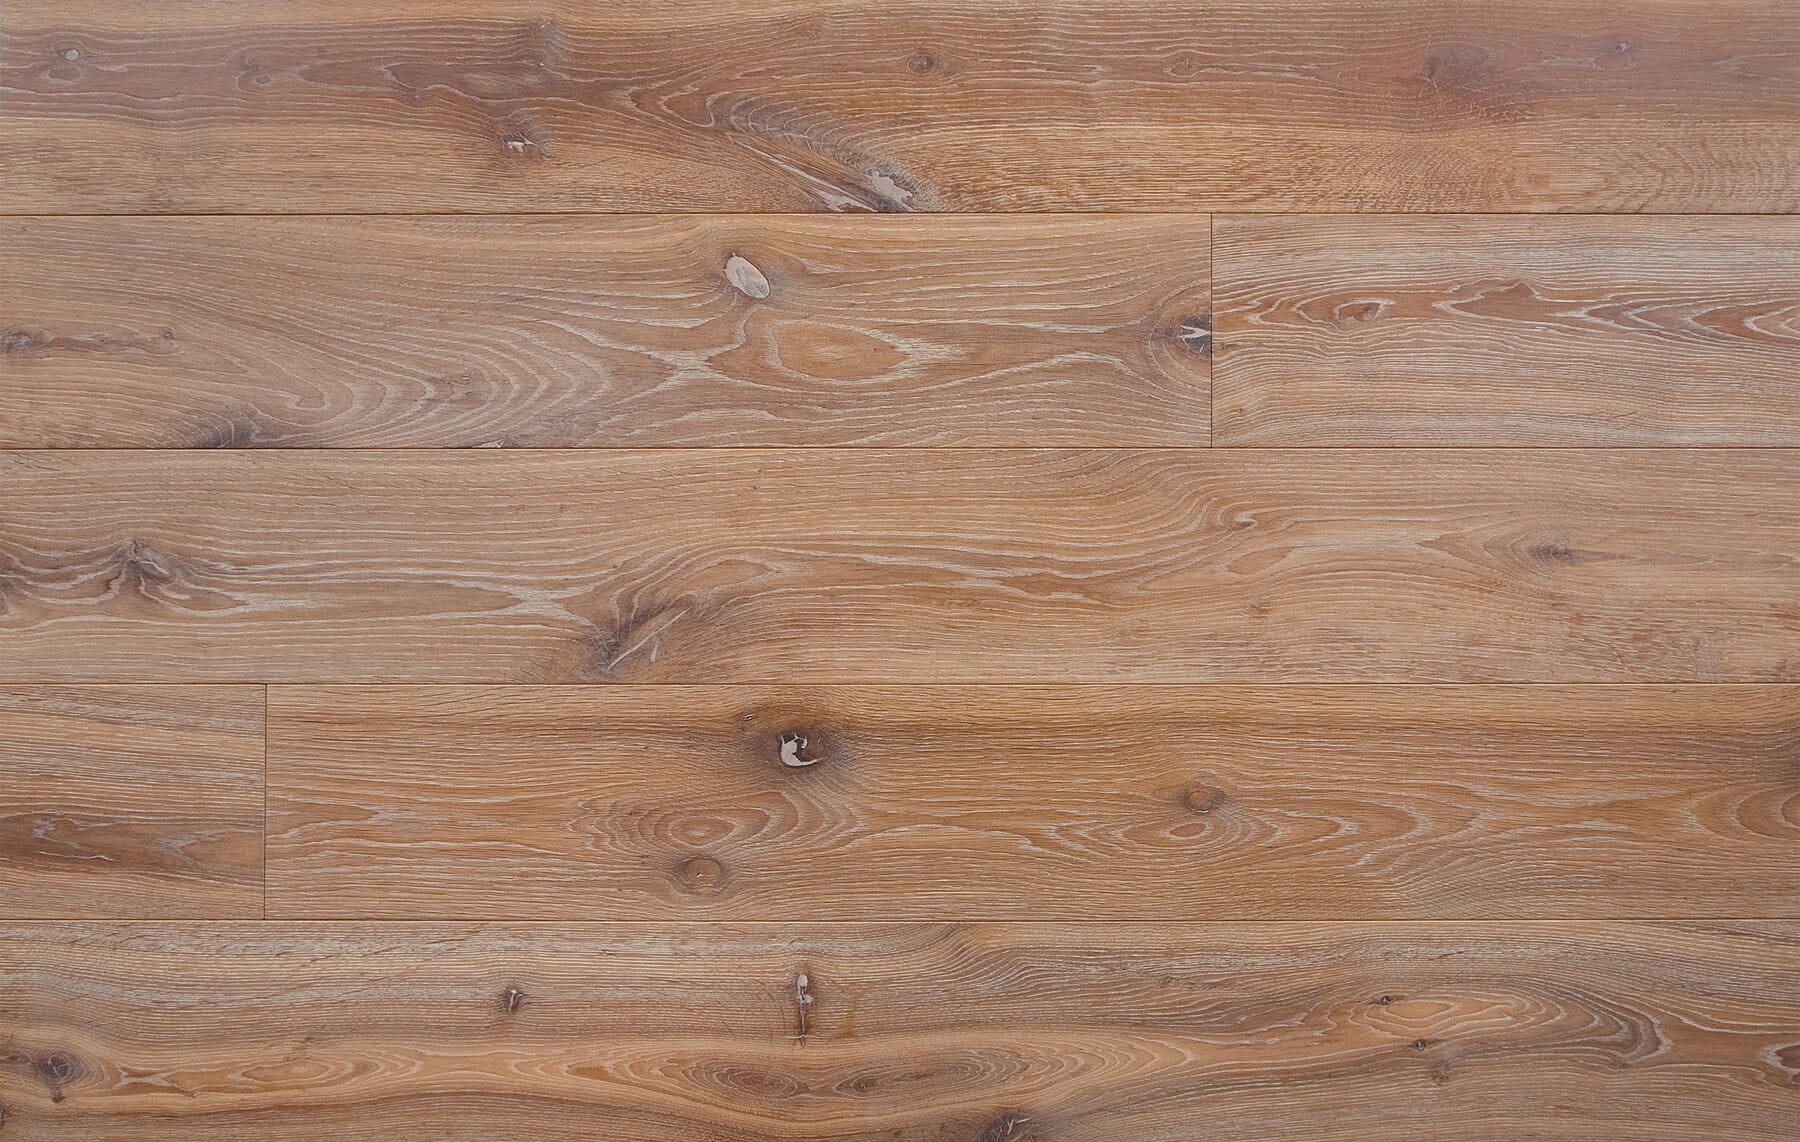 Bespoke brown and grey engineered wood flooring in multi-width planks